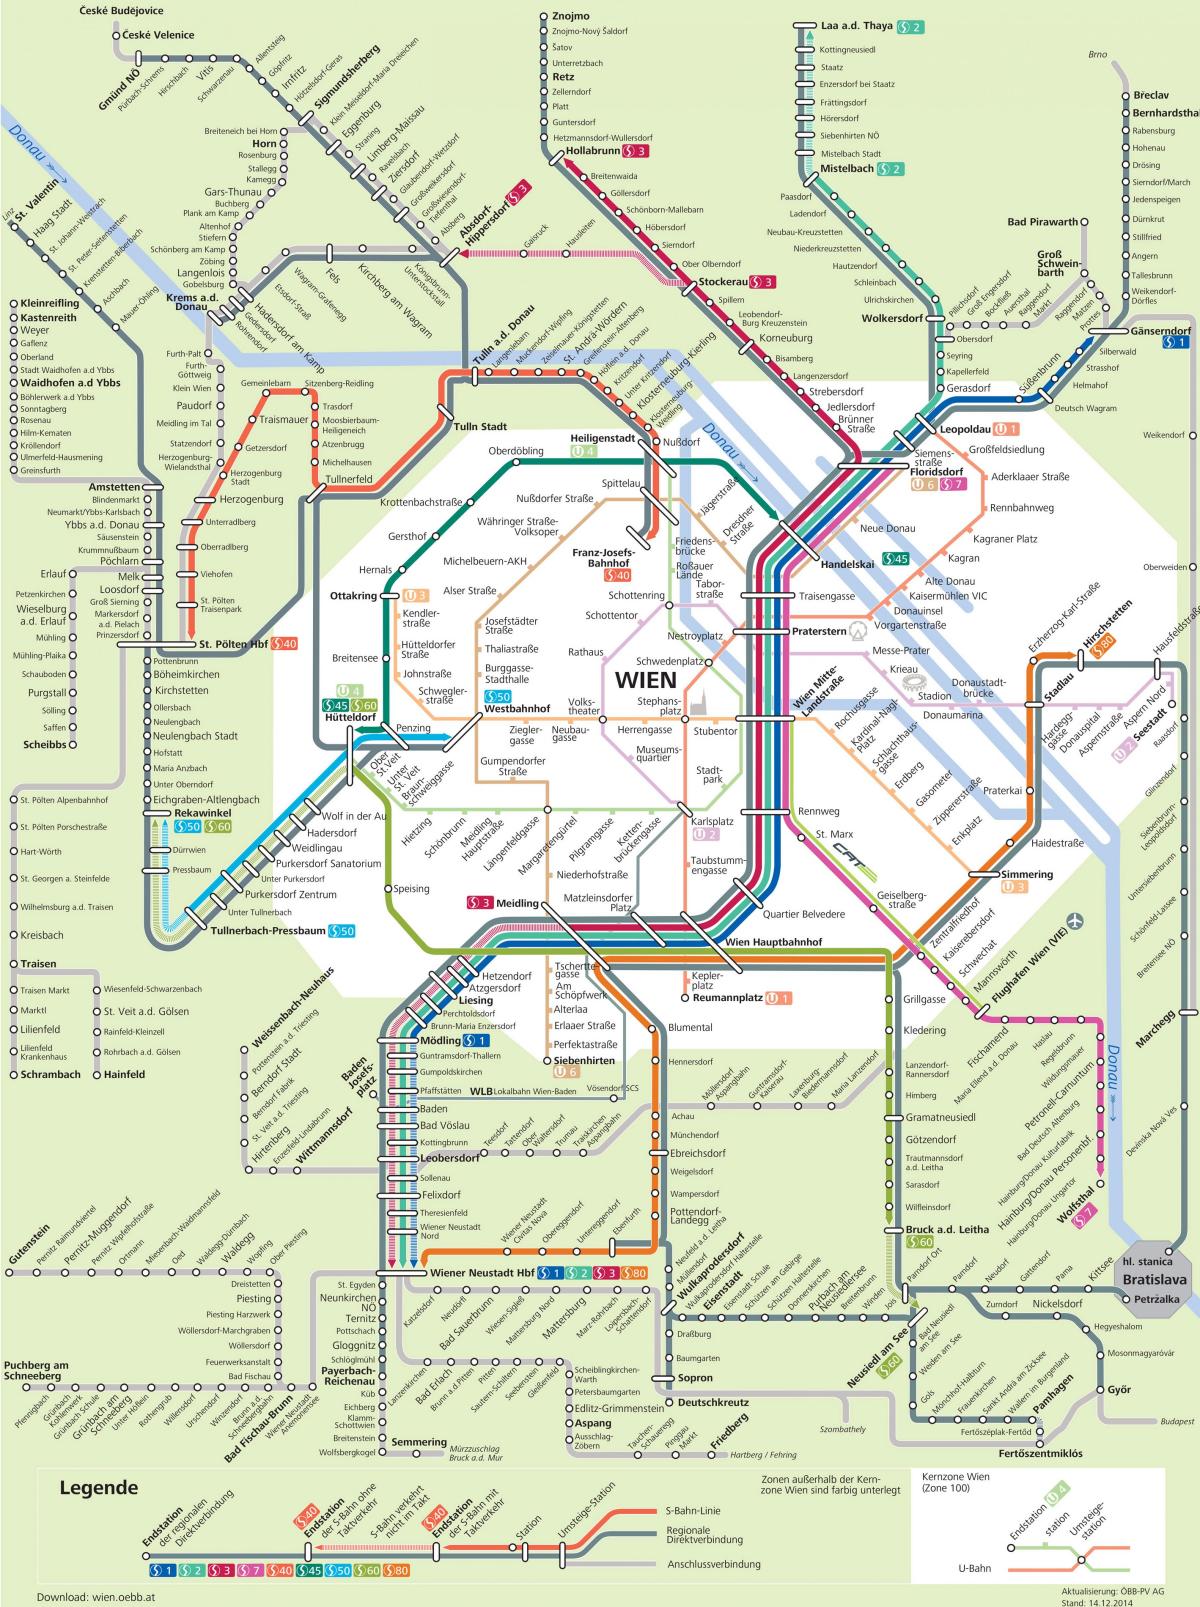 Wien city transport kart